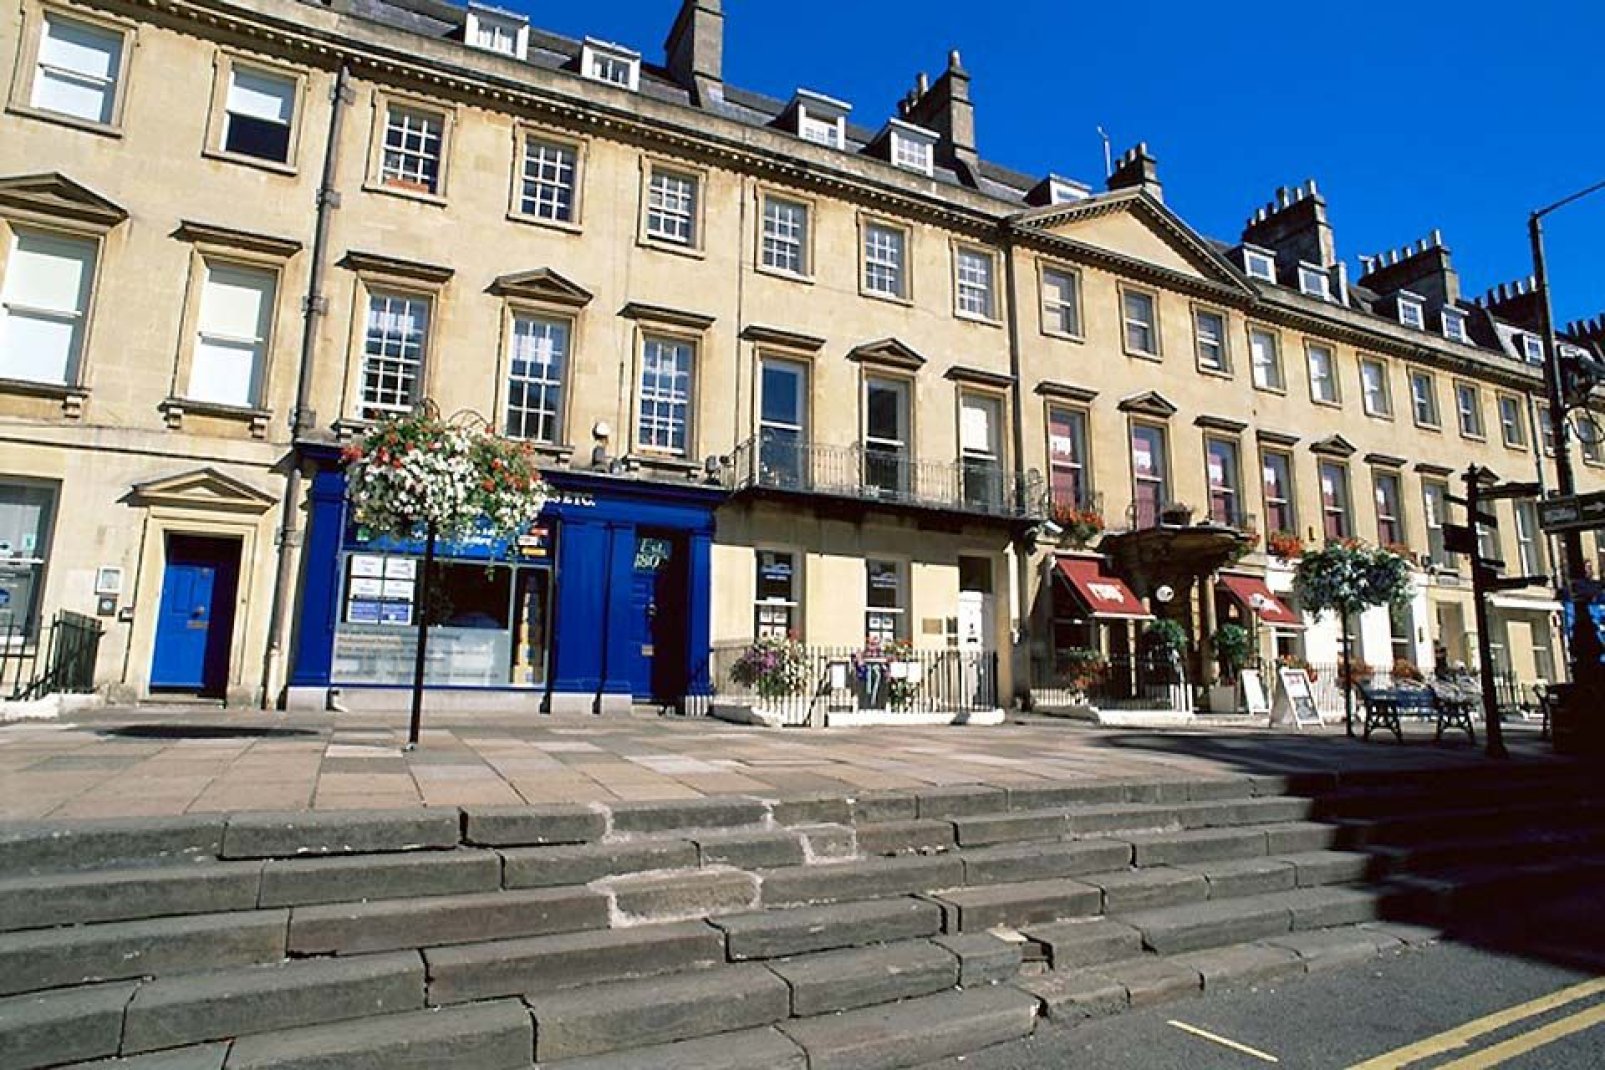 Casas adosadas y la terraza de un restaurante en el centro de Bath.